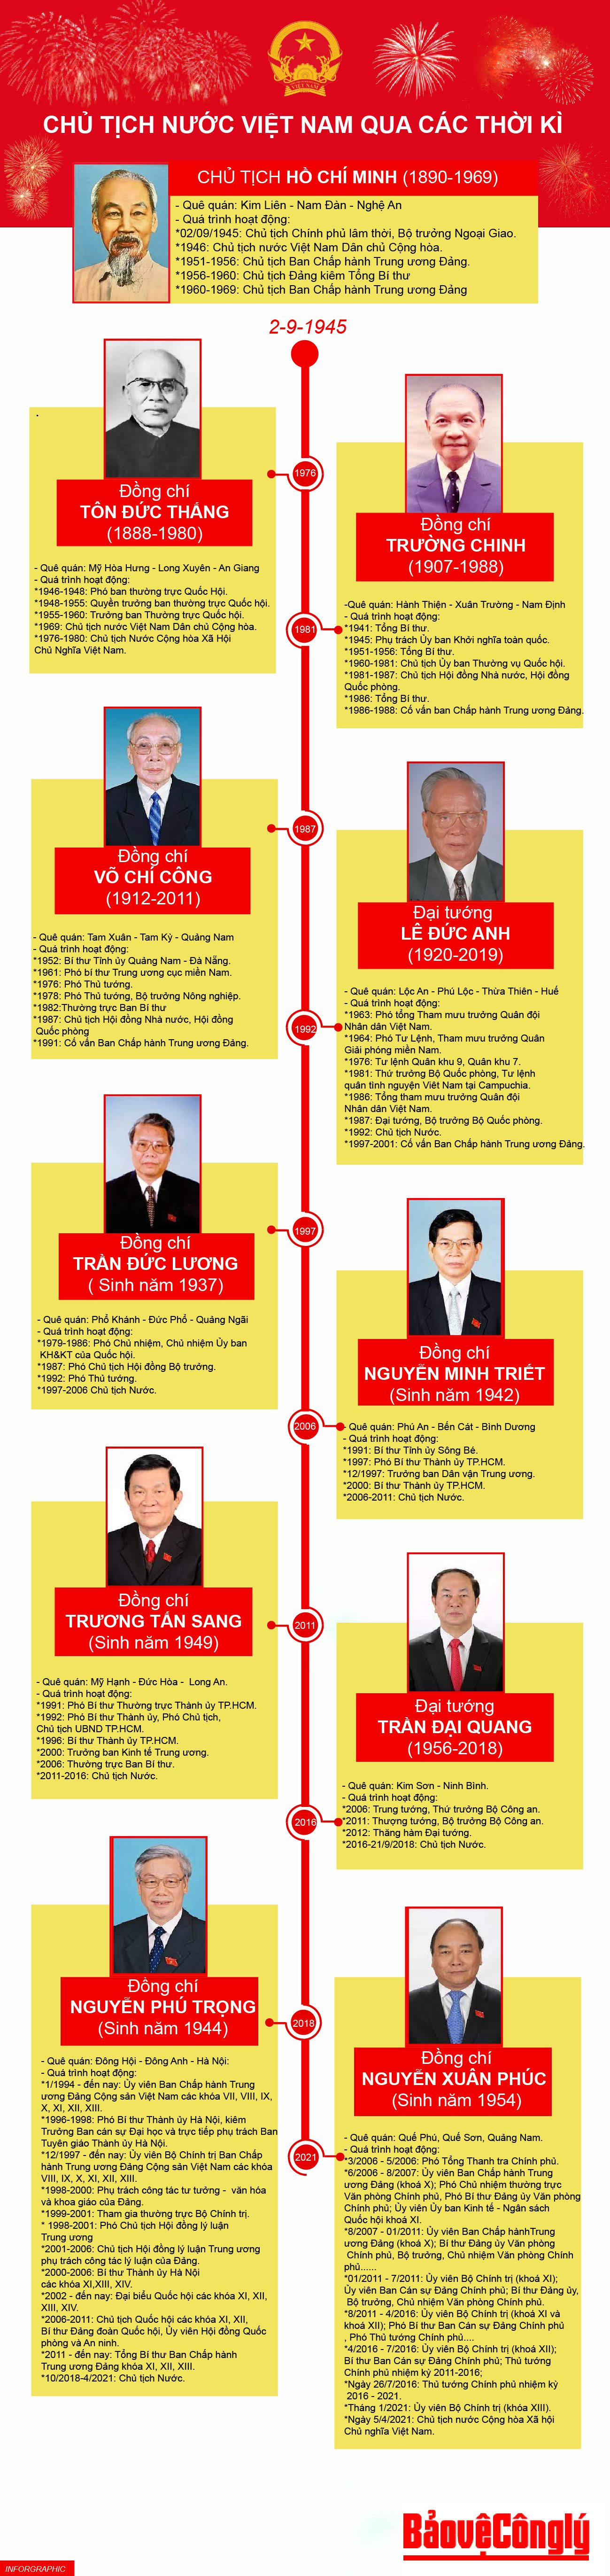 Chủ tịch nước Việt Nam: Sự xuất hiện của Chủ tịch nước Việt Nam trong những năm qua đã đánh dấu một bước ngoặt lịch sử trong lãnh đạo đất nước. Hãy xem hình ảnh về sự kiện này để cùng nhau ủng hộ cho sự phát triển của Việt Nam.